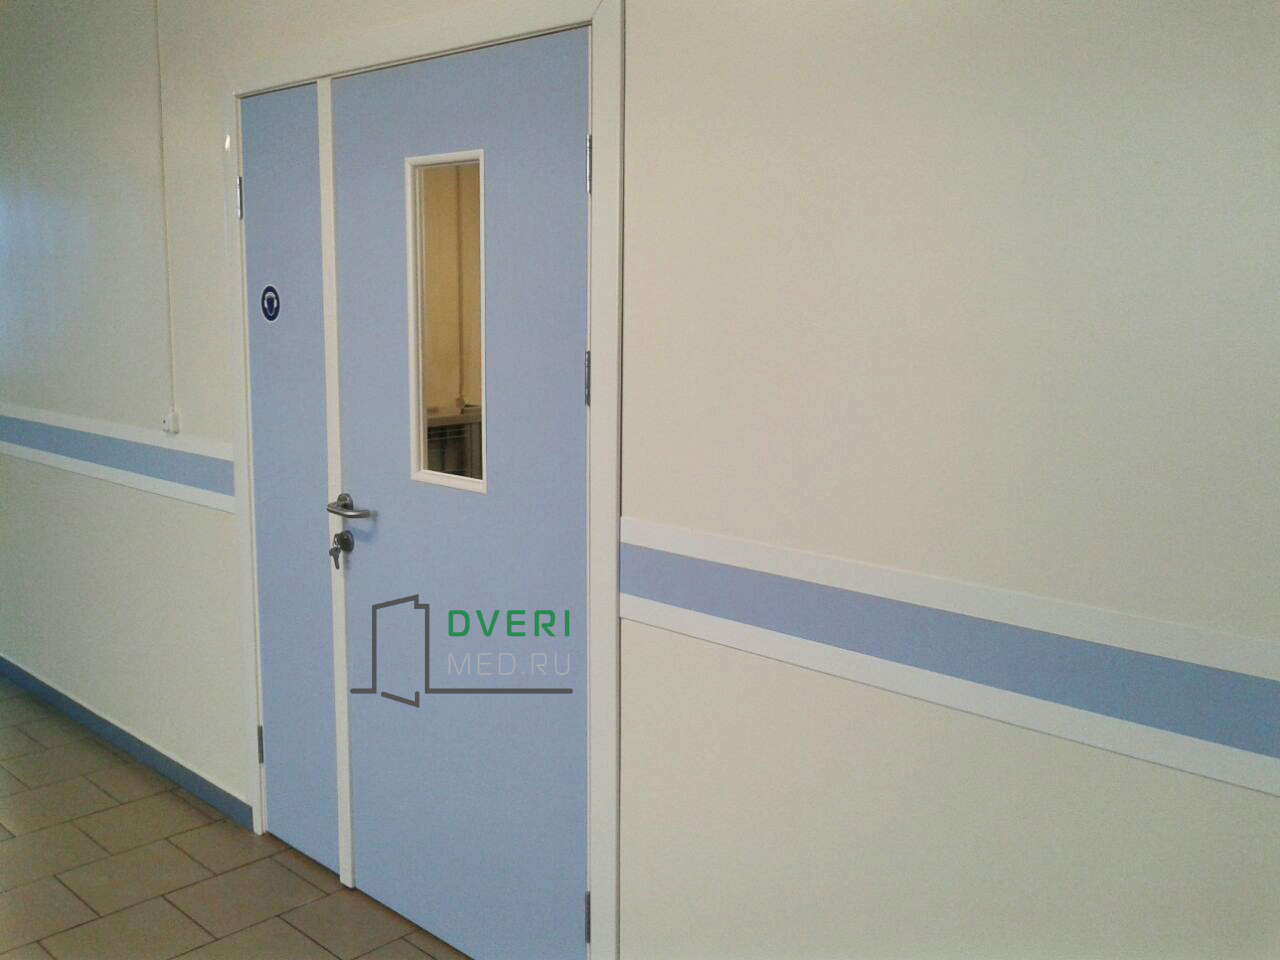 Двери для медицинских учреждений. Двери медицинские SPI. Двери для медучреждений. Двери медицинские с покрытием SPI.